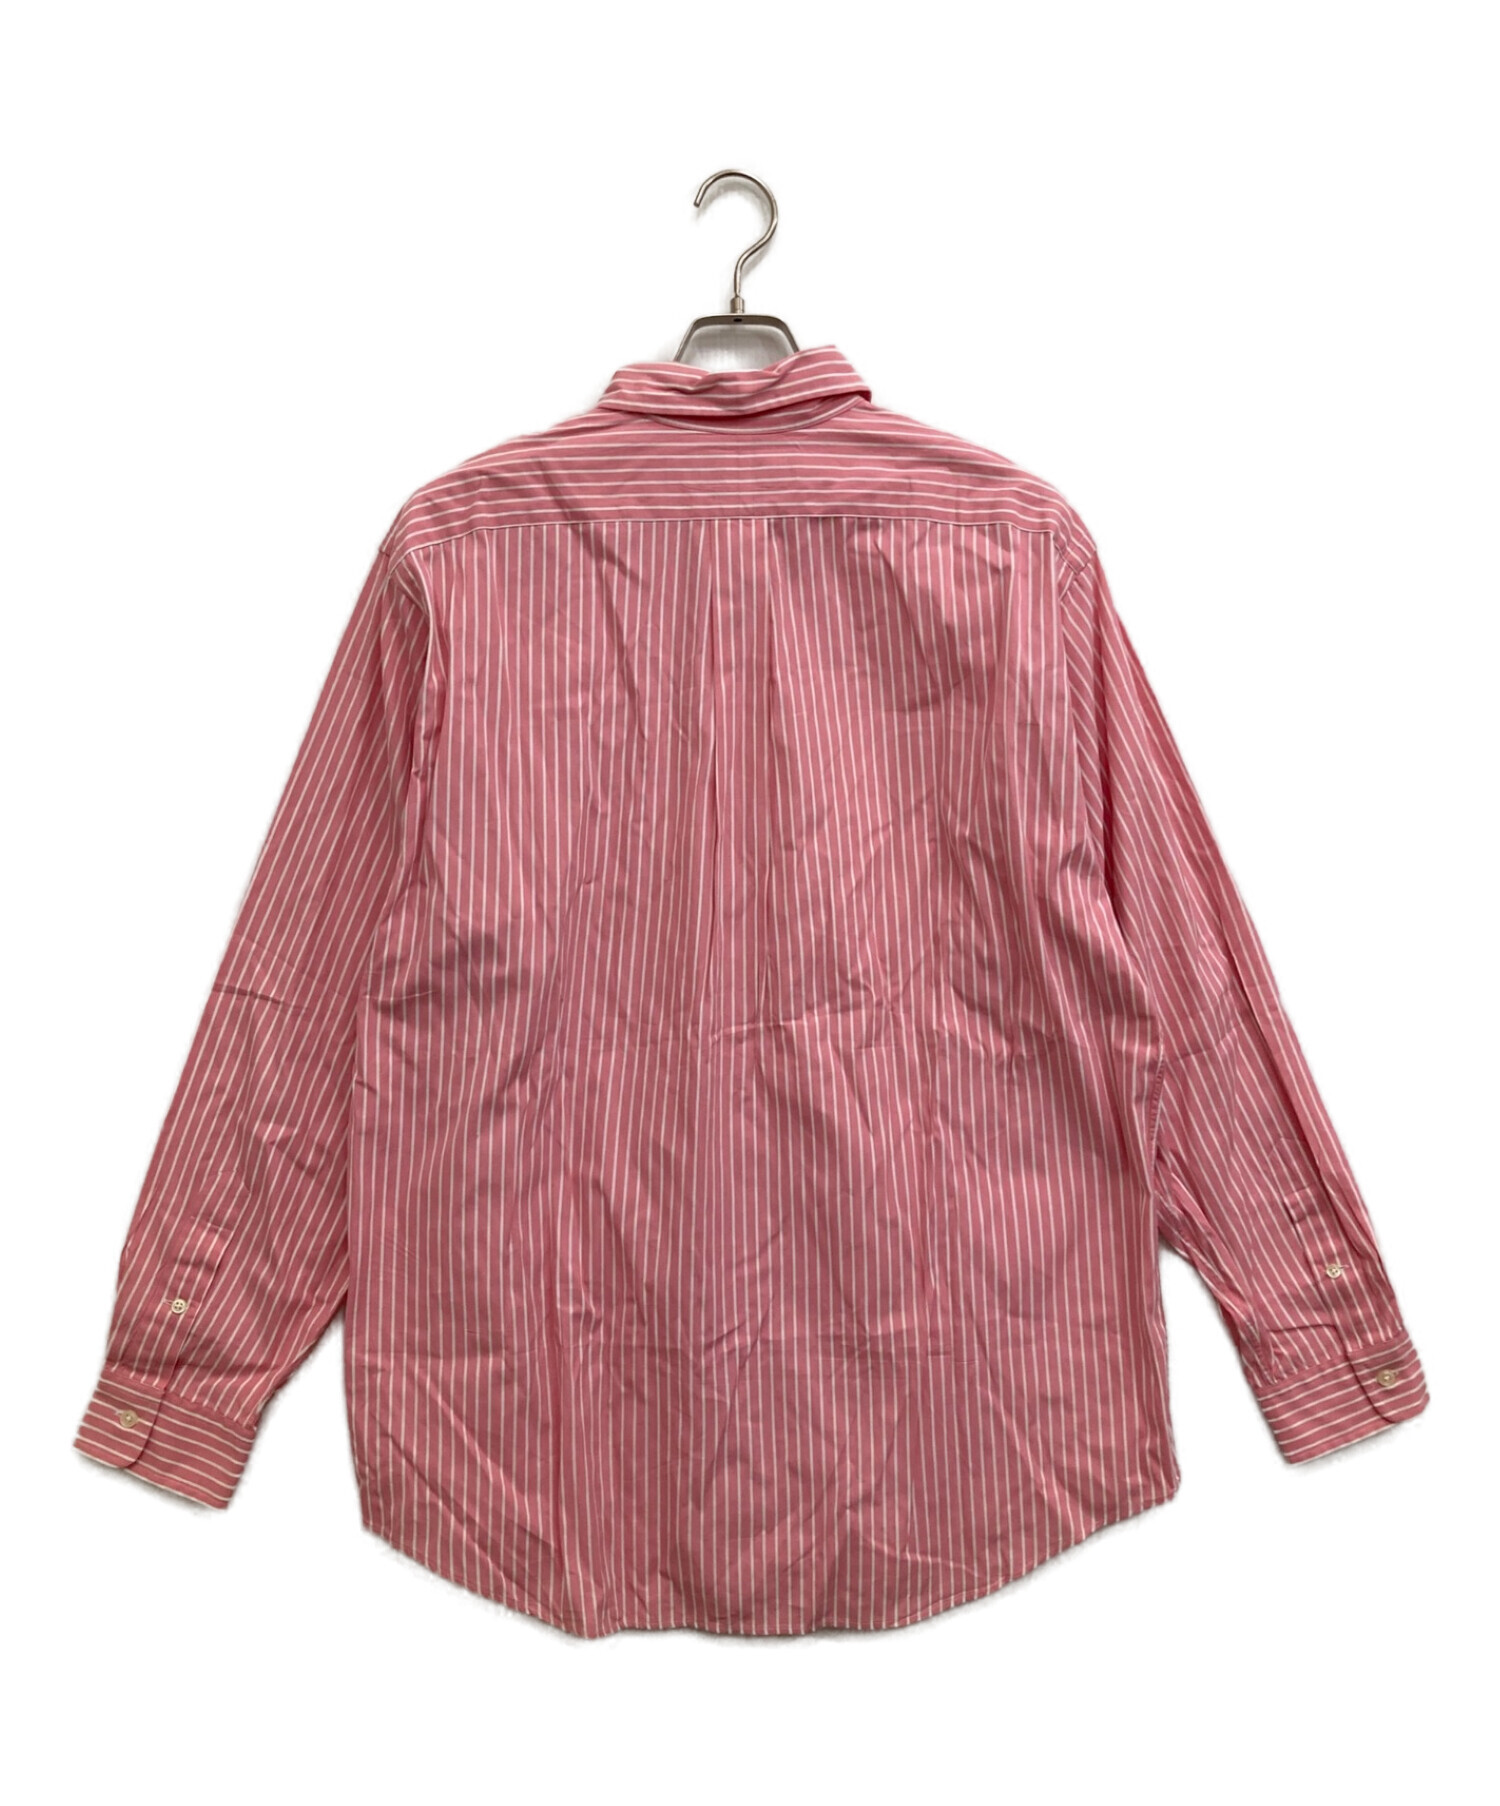 POLO RALPH LAUREN (ポロ・ラルフローレン) ストライプシャツ ピンク サイズ:XL